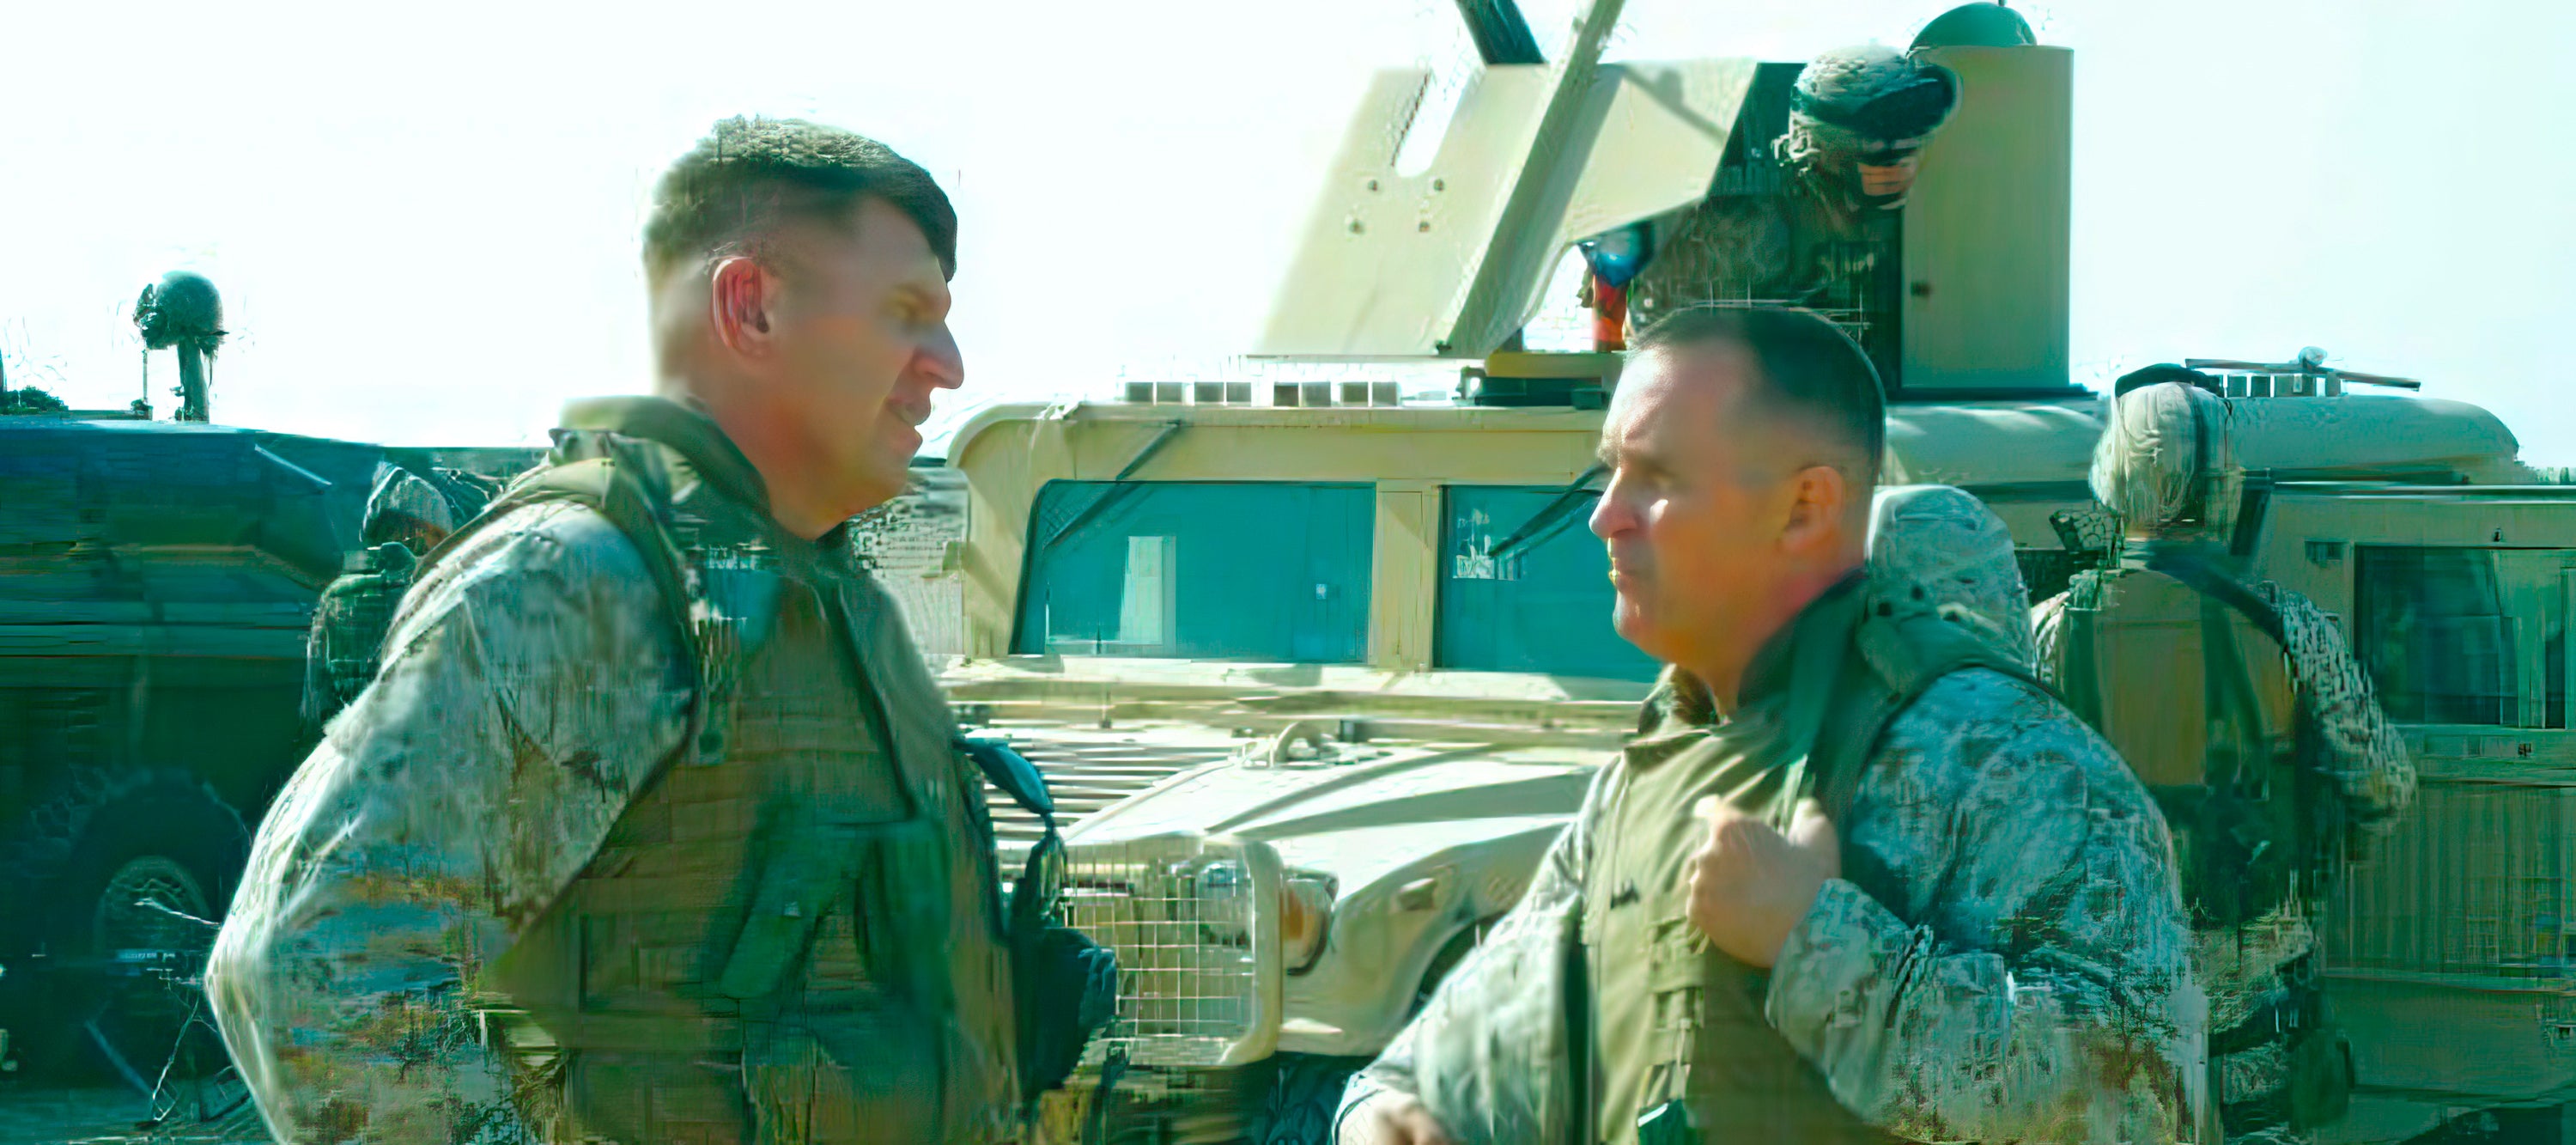 Battlefield Fallujah Warriors: Lieutenant General John Sattler, USMC